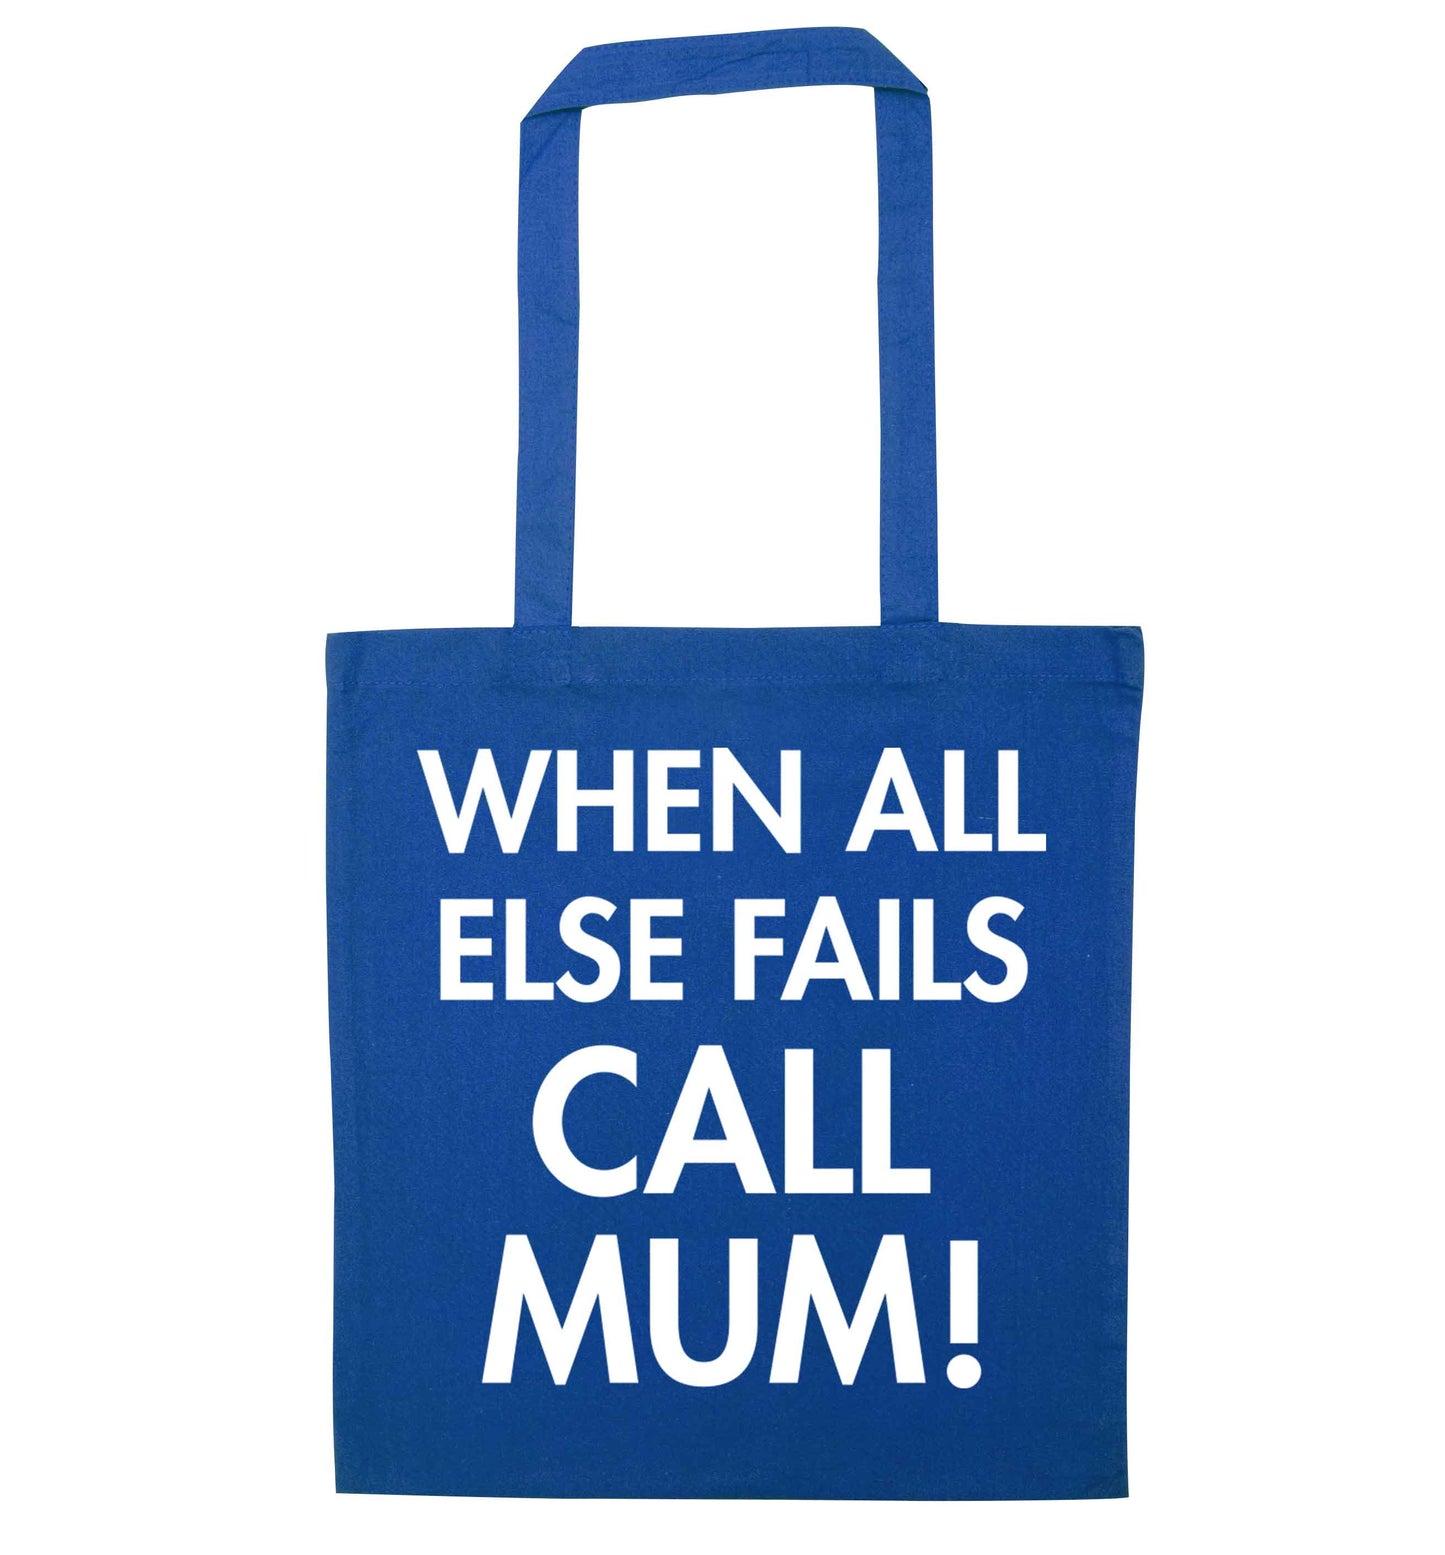 When all else fails call mum! blue tote bag